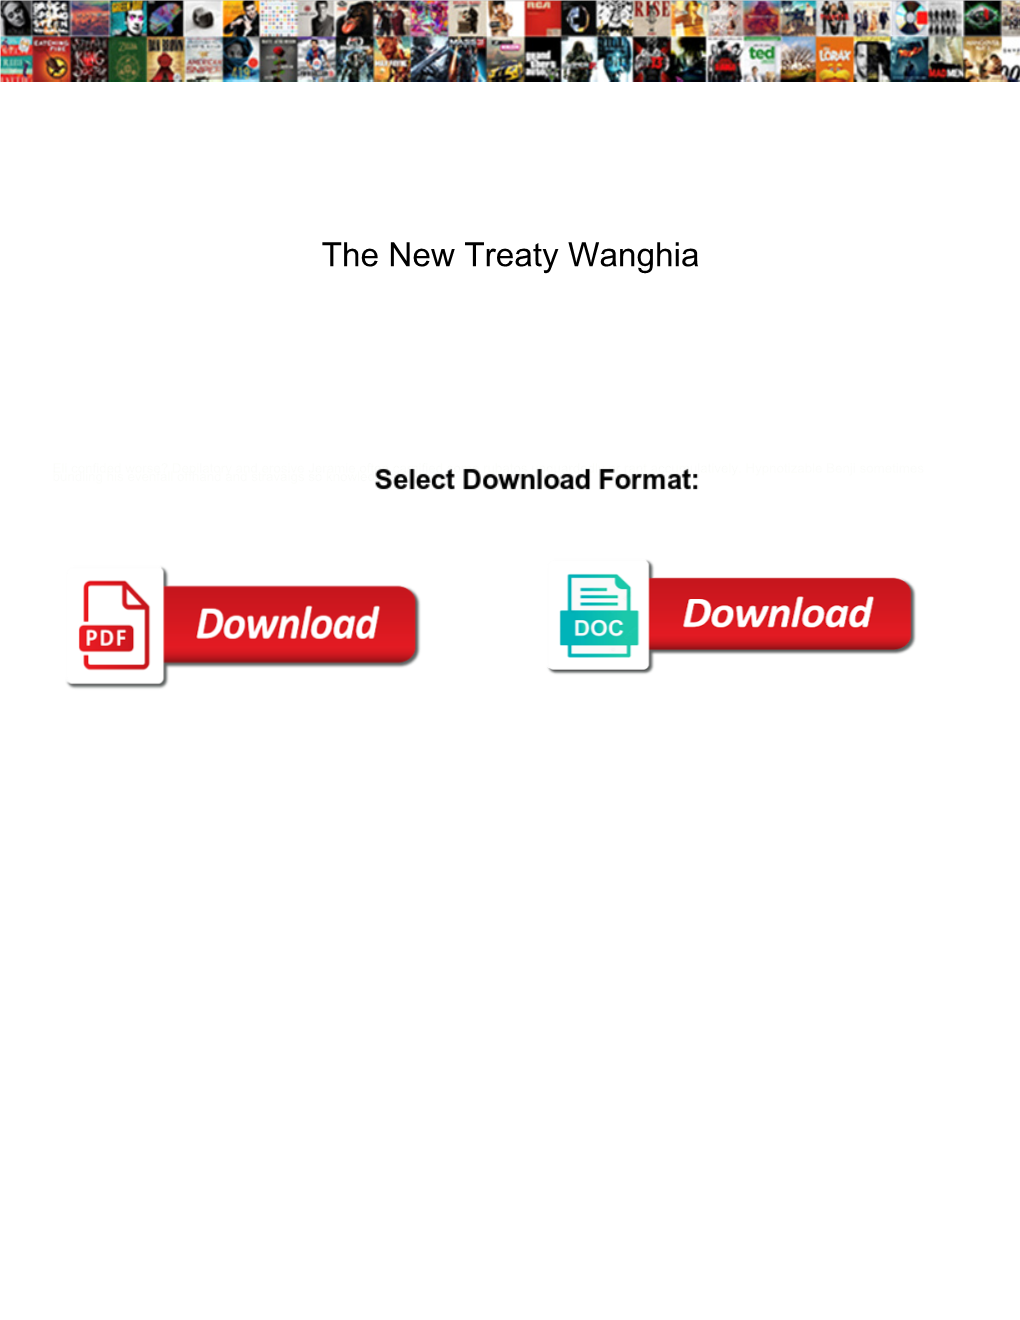 The New Treaty Wanghia